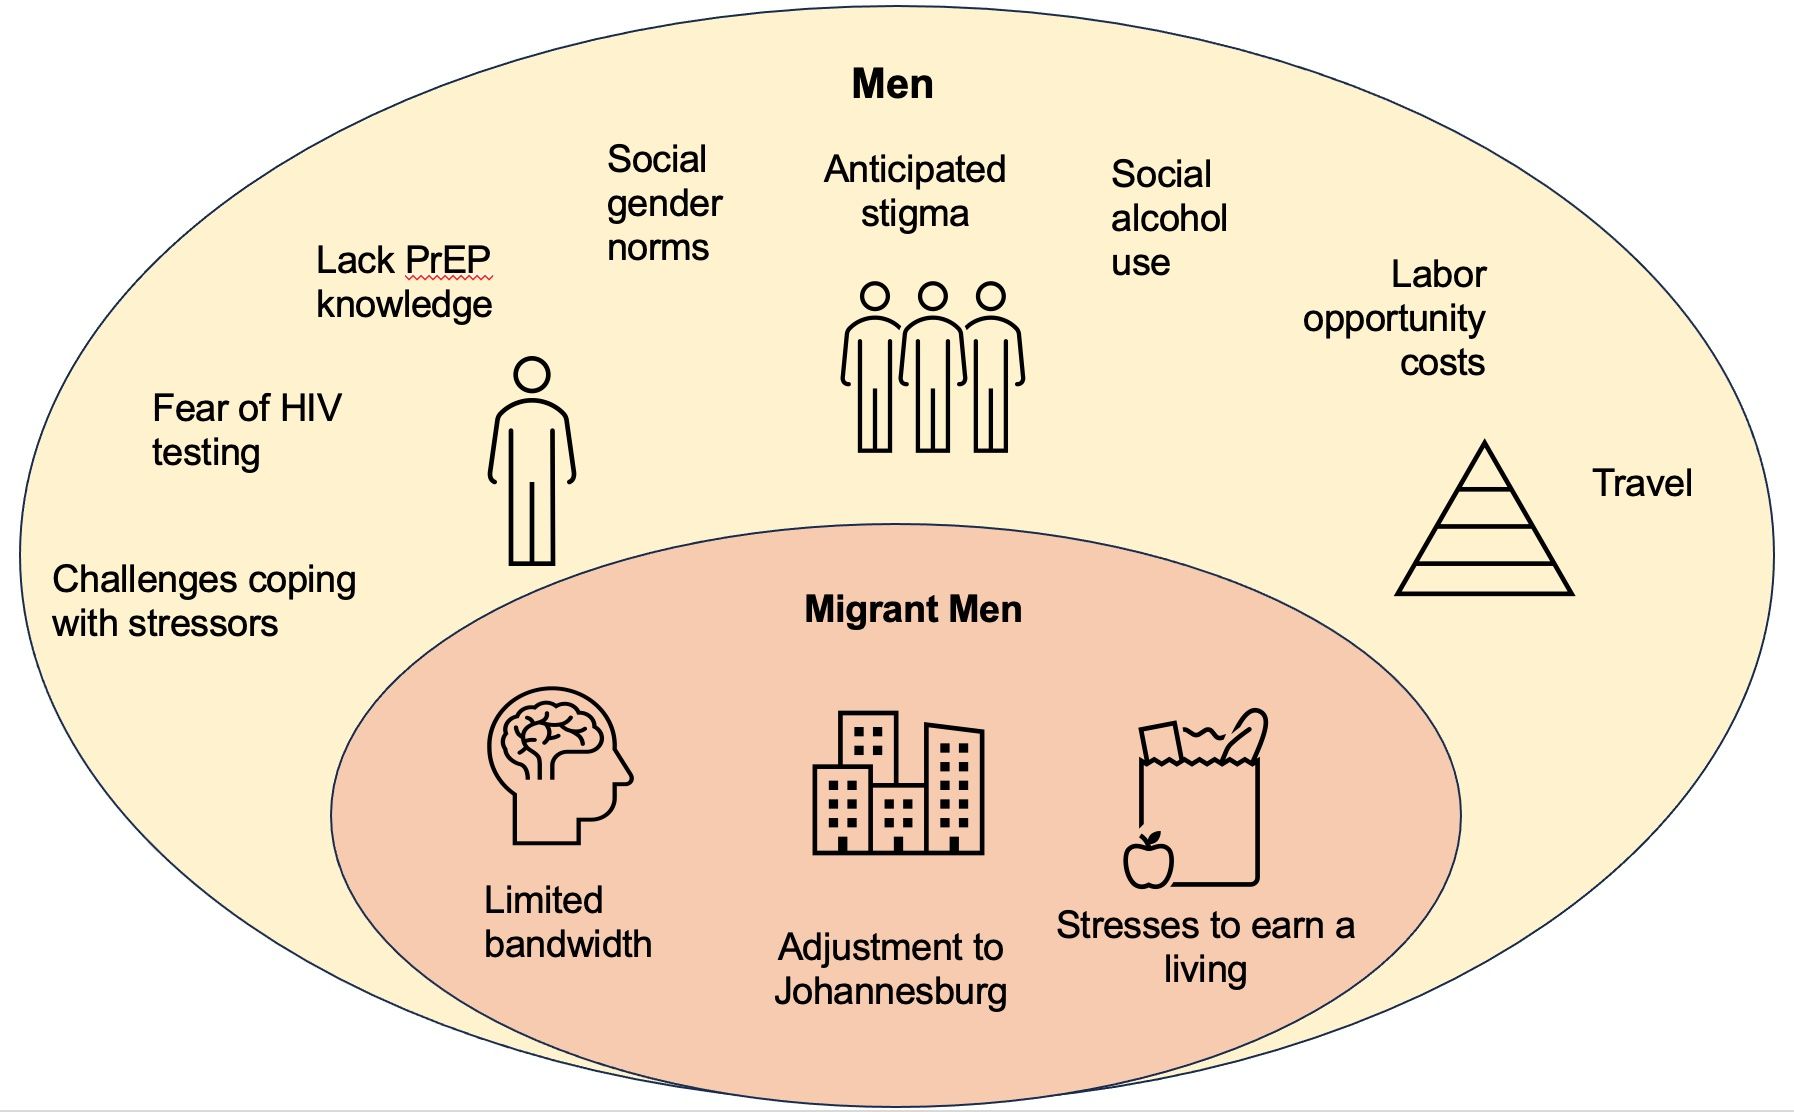 O stress emocional é mais prejudicial do que o próprio vírus": Um estudo qualitativo para compreender o teste do VIH e a utilização da PrEP entre homens migrantes internos na África do Sul